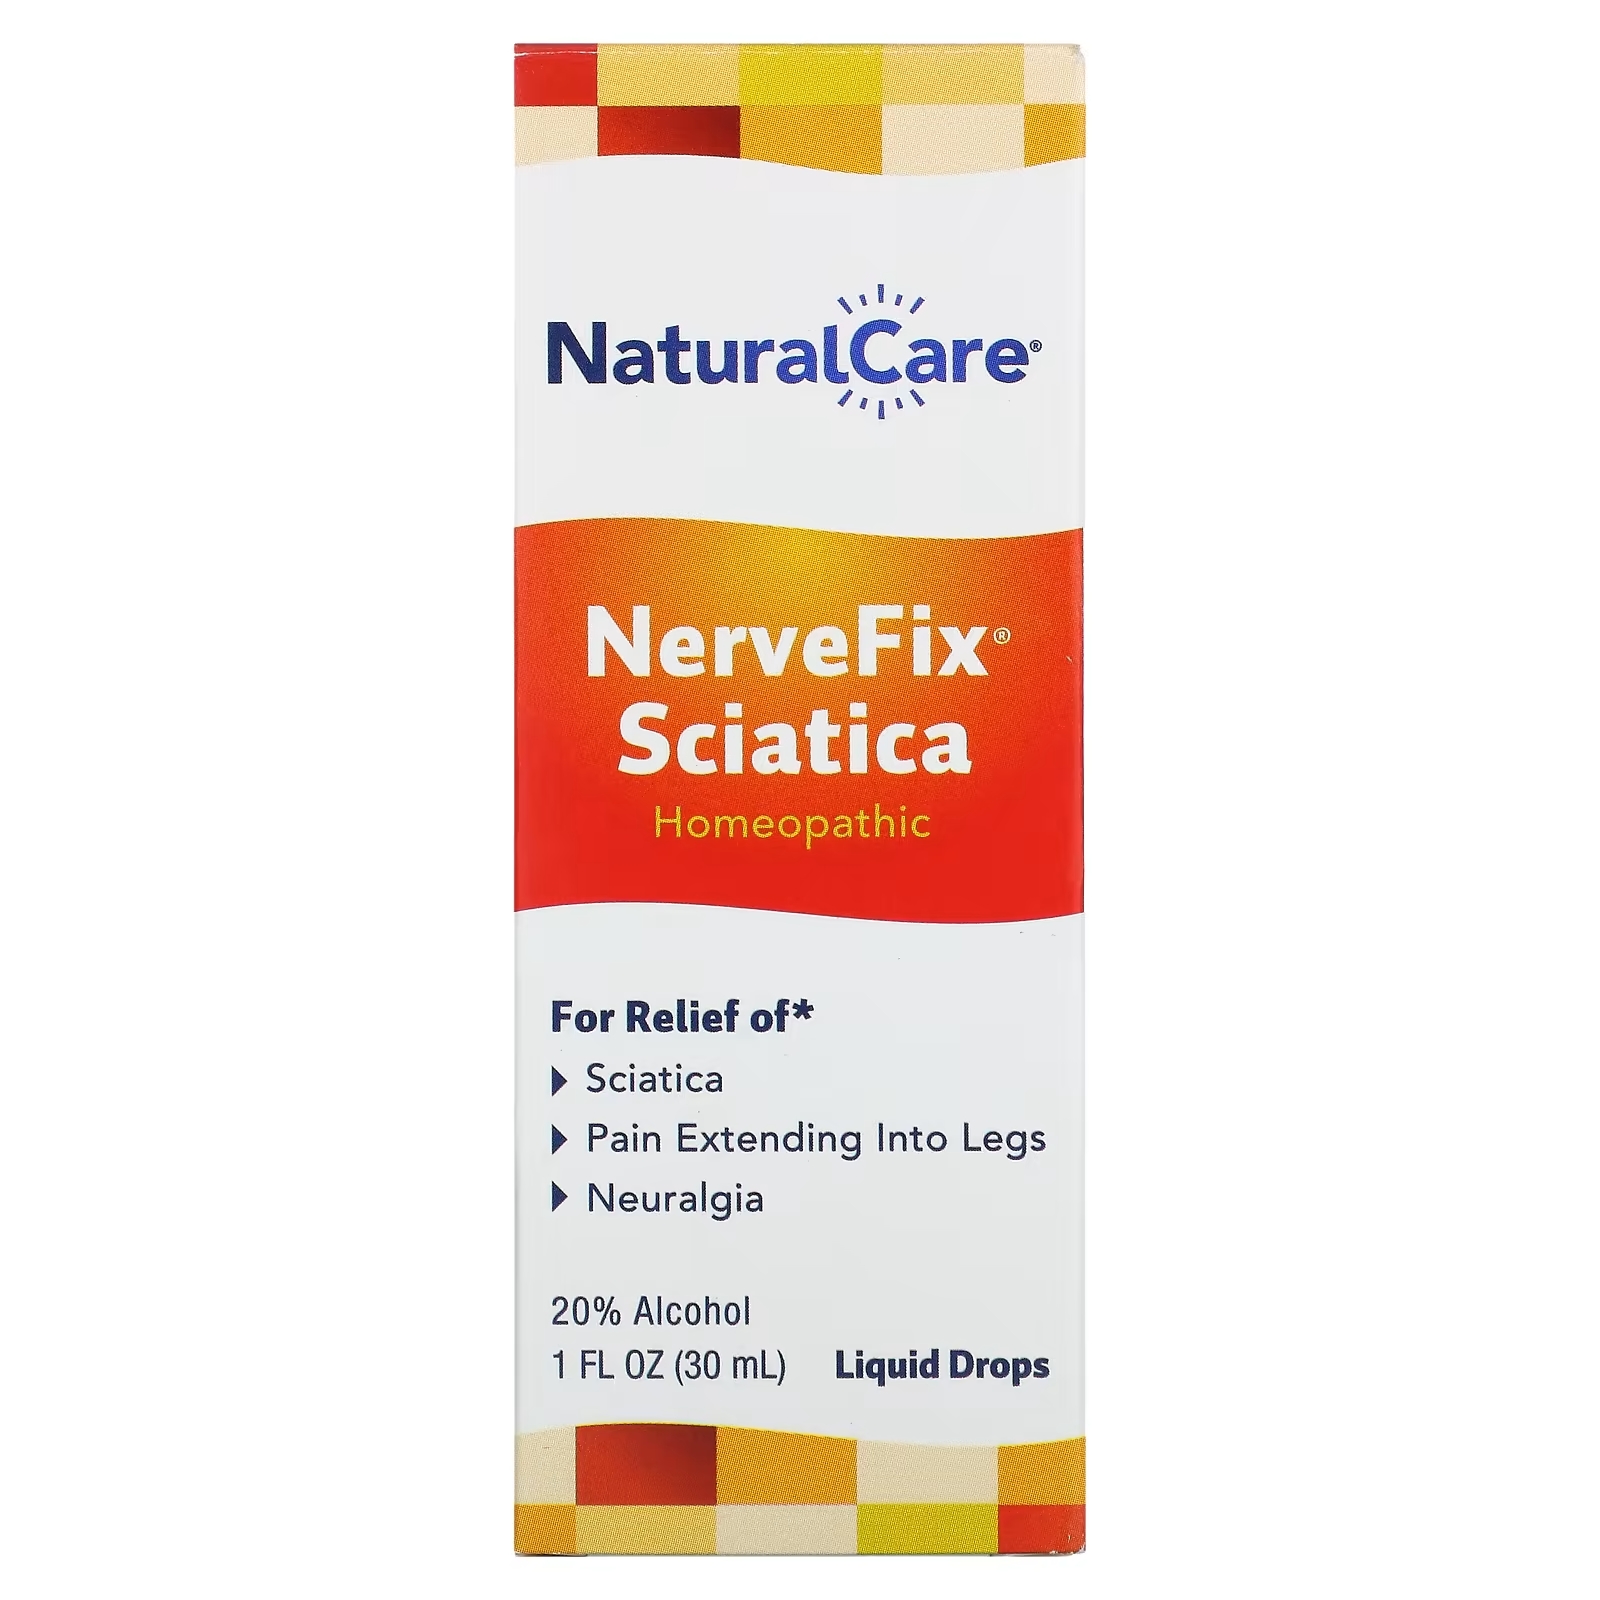 NatraBio NerveFix Sciatica натуральное средство от ишиаса и неврологических болей, 30 мл natrabio средство от ишиаса и невралгии 1 жидкая унция 30 мл